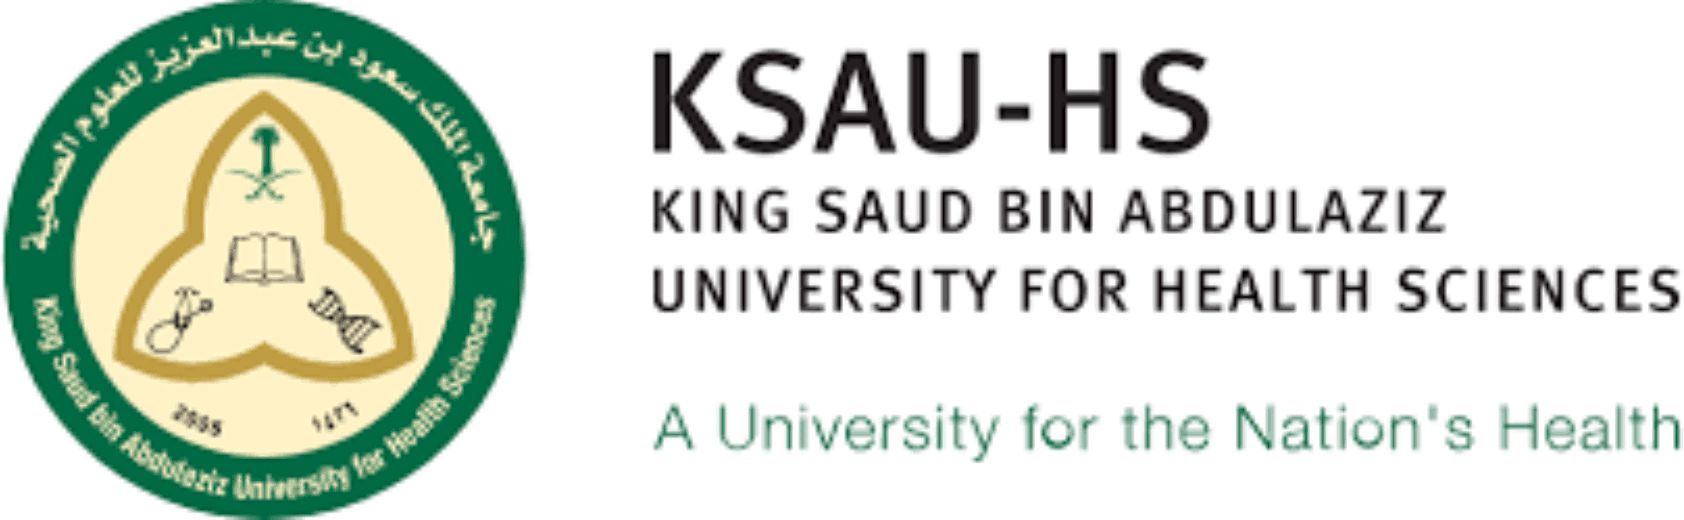 Ksau Hs Logo